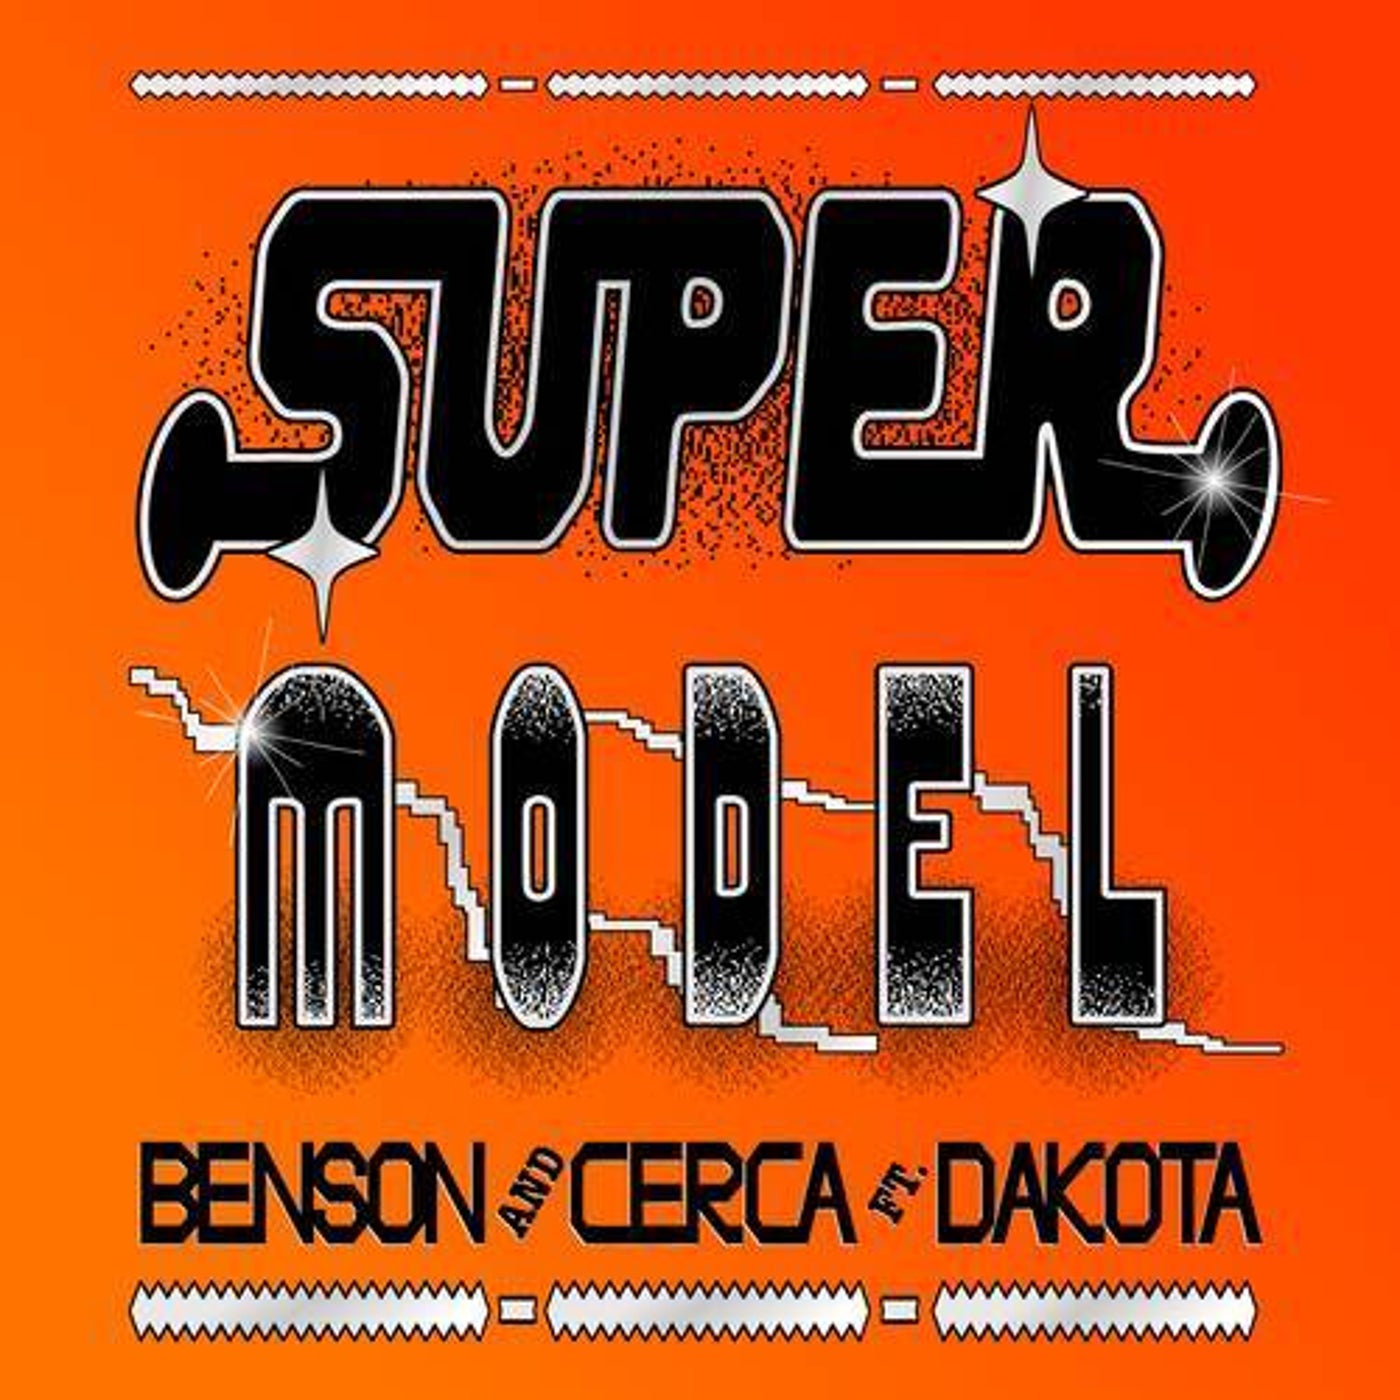 image cover: Dakota, Benson, CERCA - Super Model (Extended Mix) on Ultra